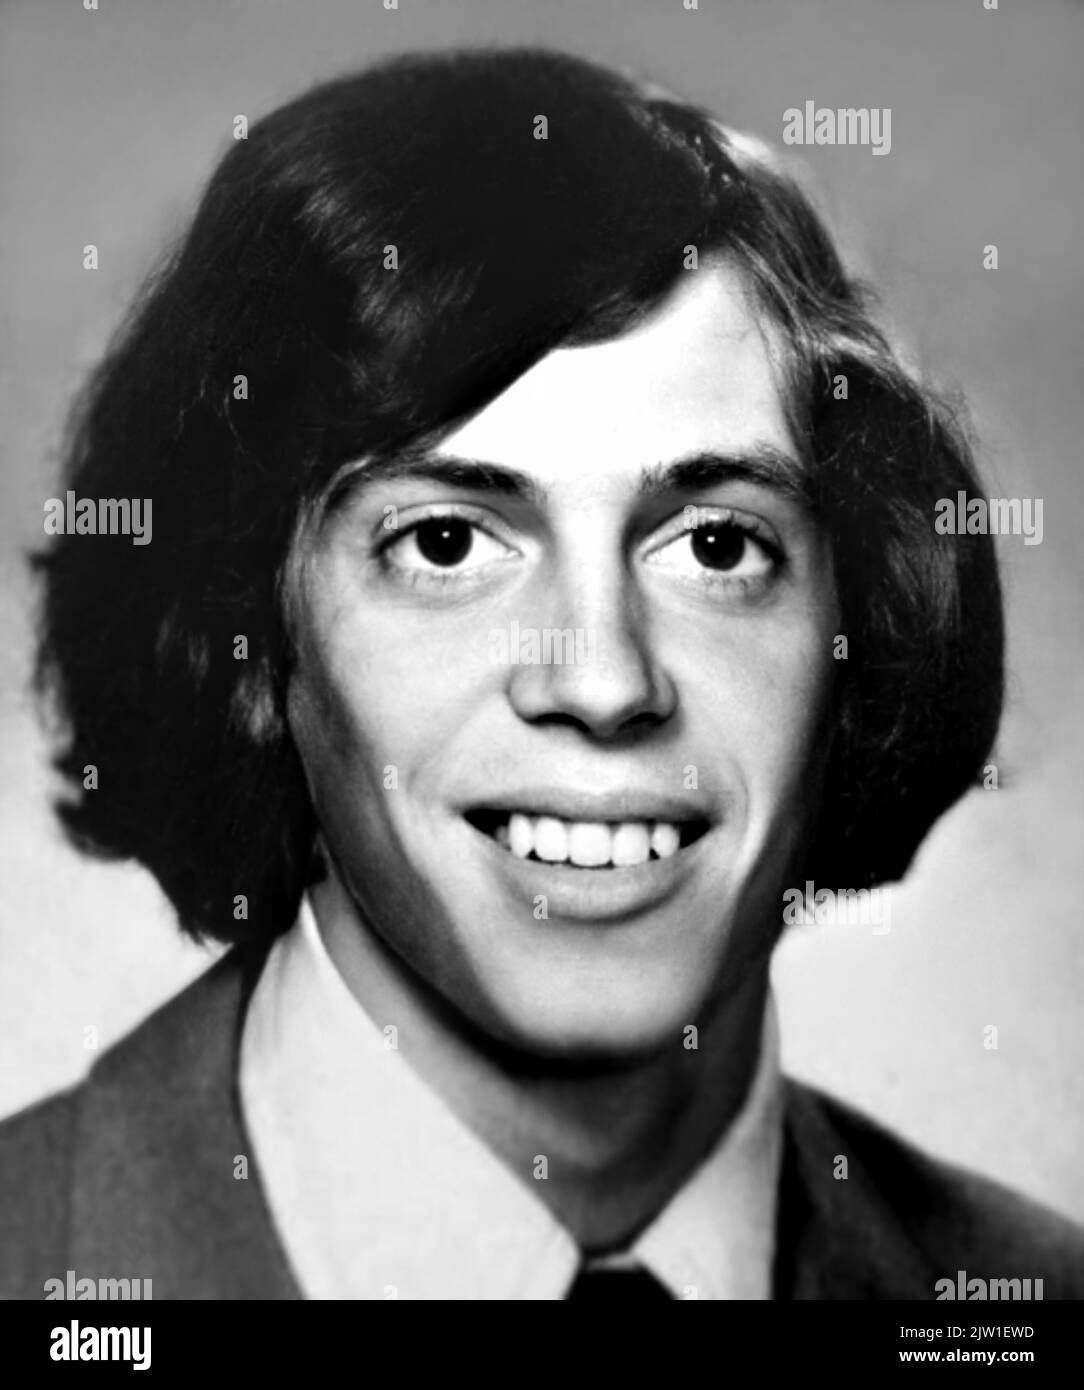 1974 , New York , USA : l'attore e regista americano STEVE BUSCEMI ( nato il 13 dicembre 1957 ), di 17 anni, foto dell'Annuario della High School . Fotografo sconosciuto .- STORIA - FOTO STORICHE - opere - FILM - CINEMA - personalità da giovane giovani - personalità quando era giovane - registrazione - RITRATTO - ritratto - ADOLESCENTE - ADOLESCENZA - ADOLESCENTE - sorriso - sorriso - archivio GBB Foto Stock